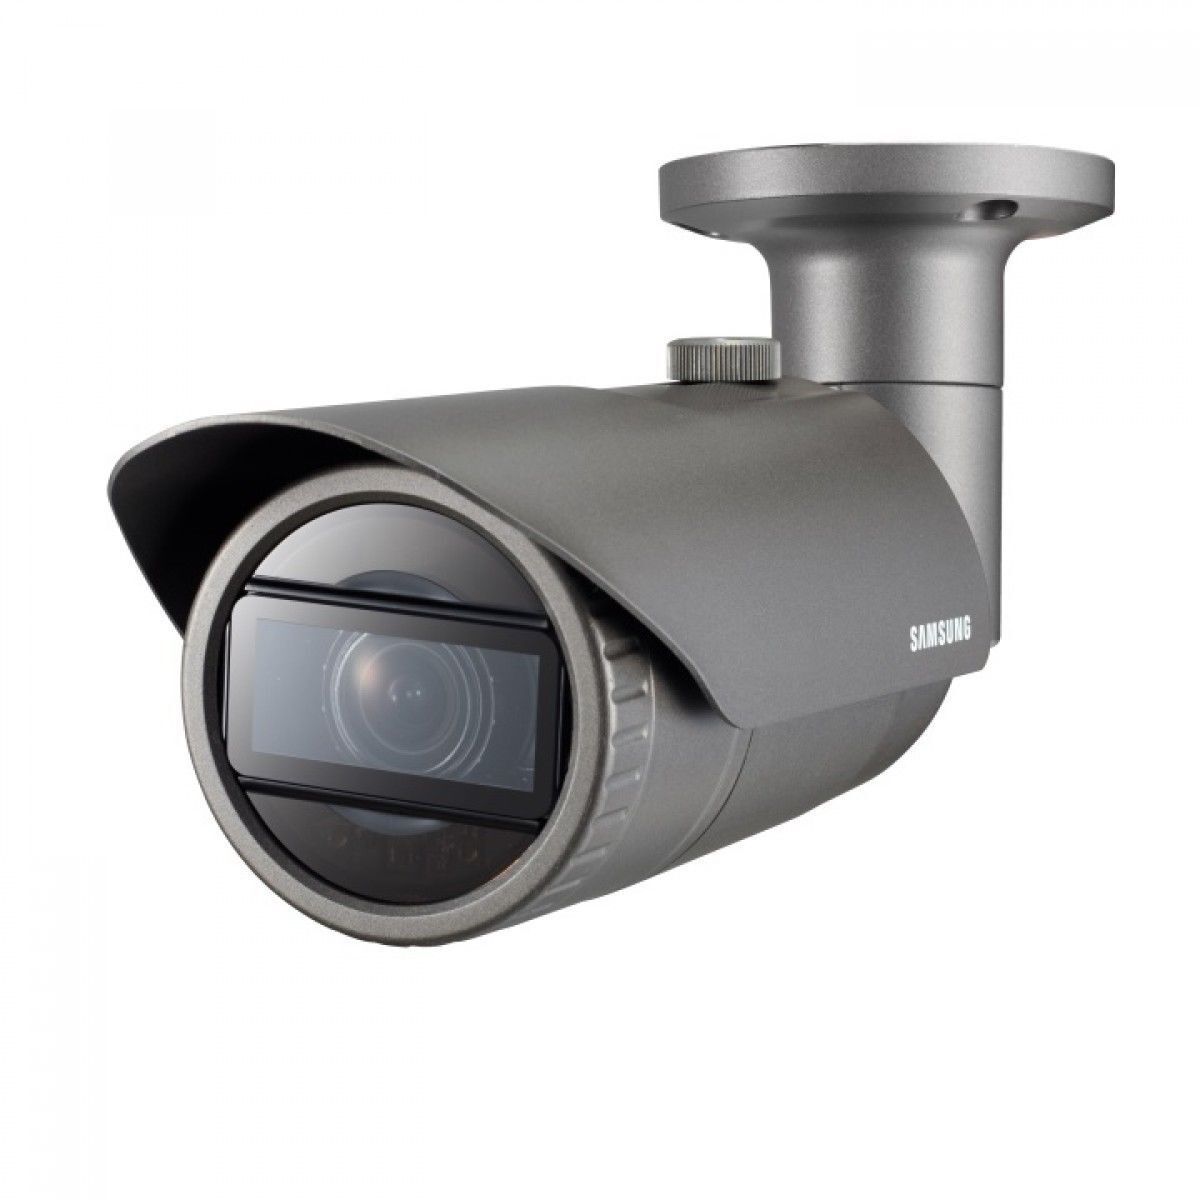 CAMARA DE CCTV BALAS HANWHA QNO-7080R 4 MP HD WISENET RED IP IR RESISTENTE A LA INTERPERIE.